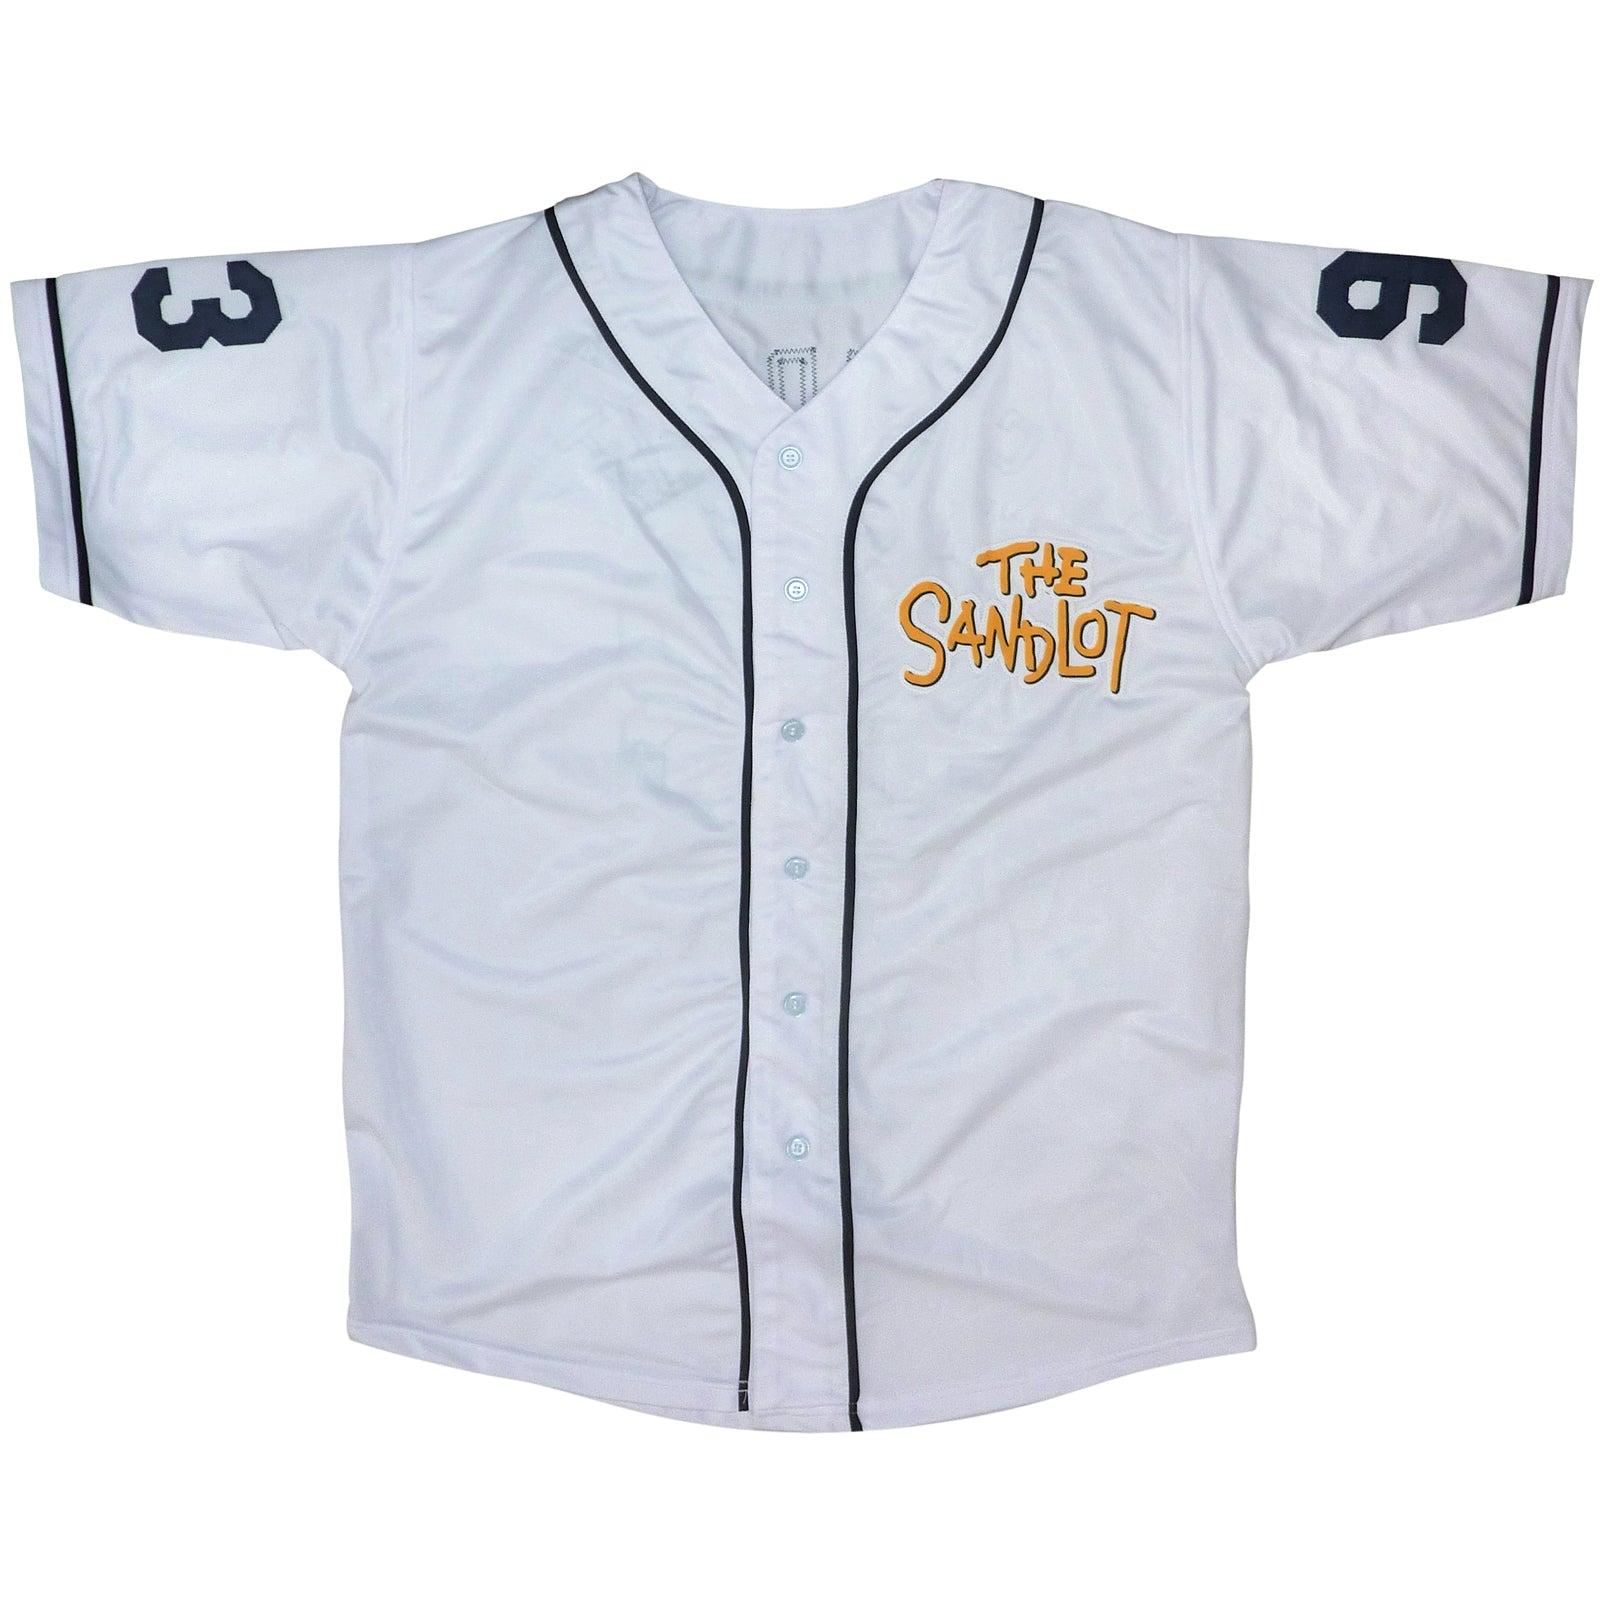 MLB Baltimore Orioles White Baseball Jersey Shirt Custom Number